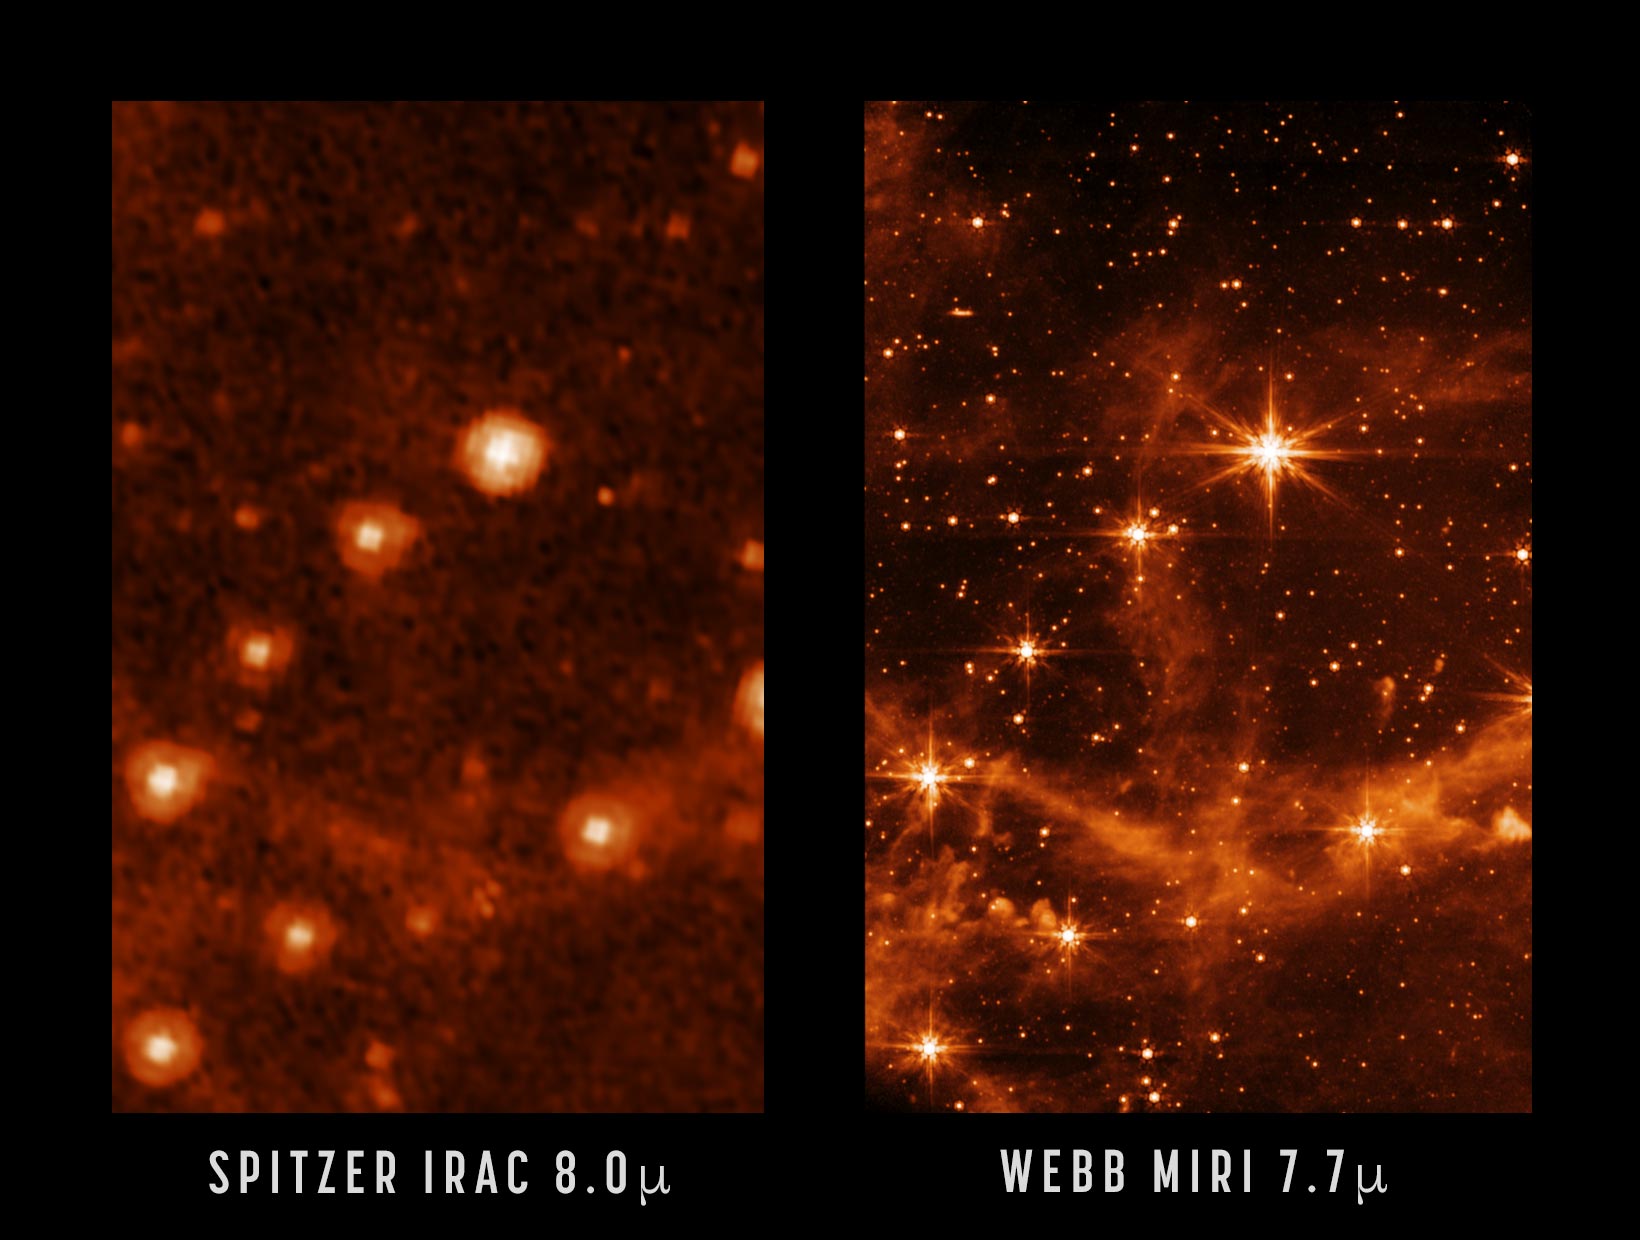 Neįtikėtinai ryškus Webb kosminio teleskopo bandomasis vaizdas rodo naujas mokslo galimybes